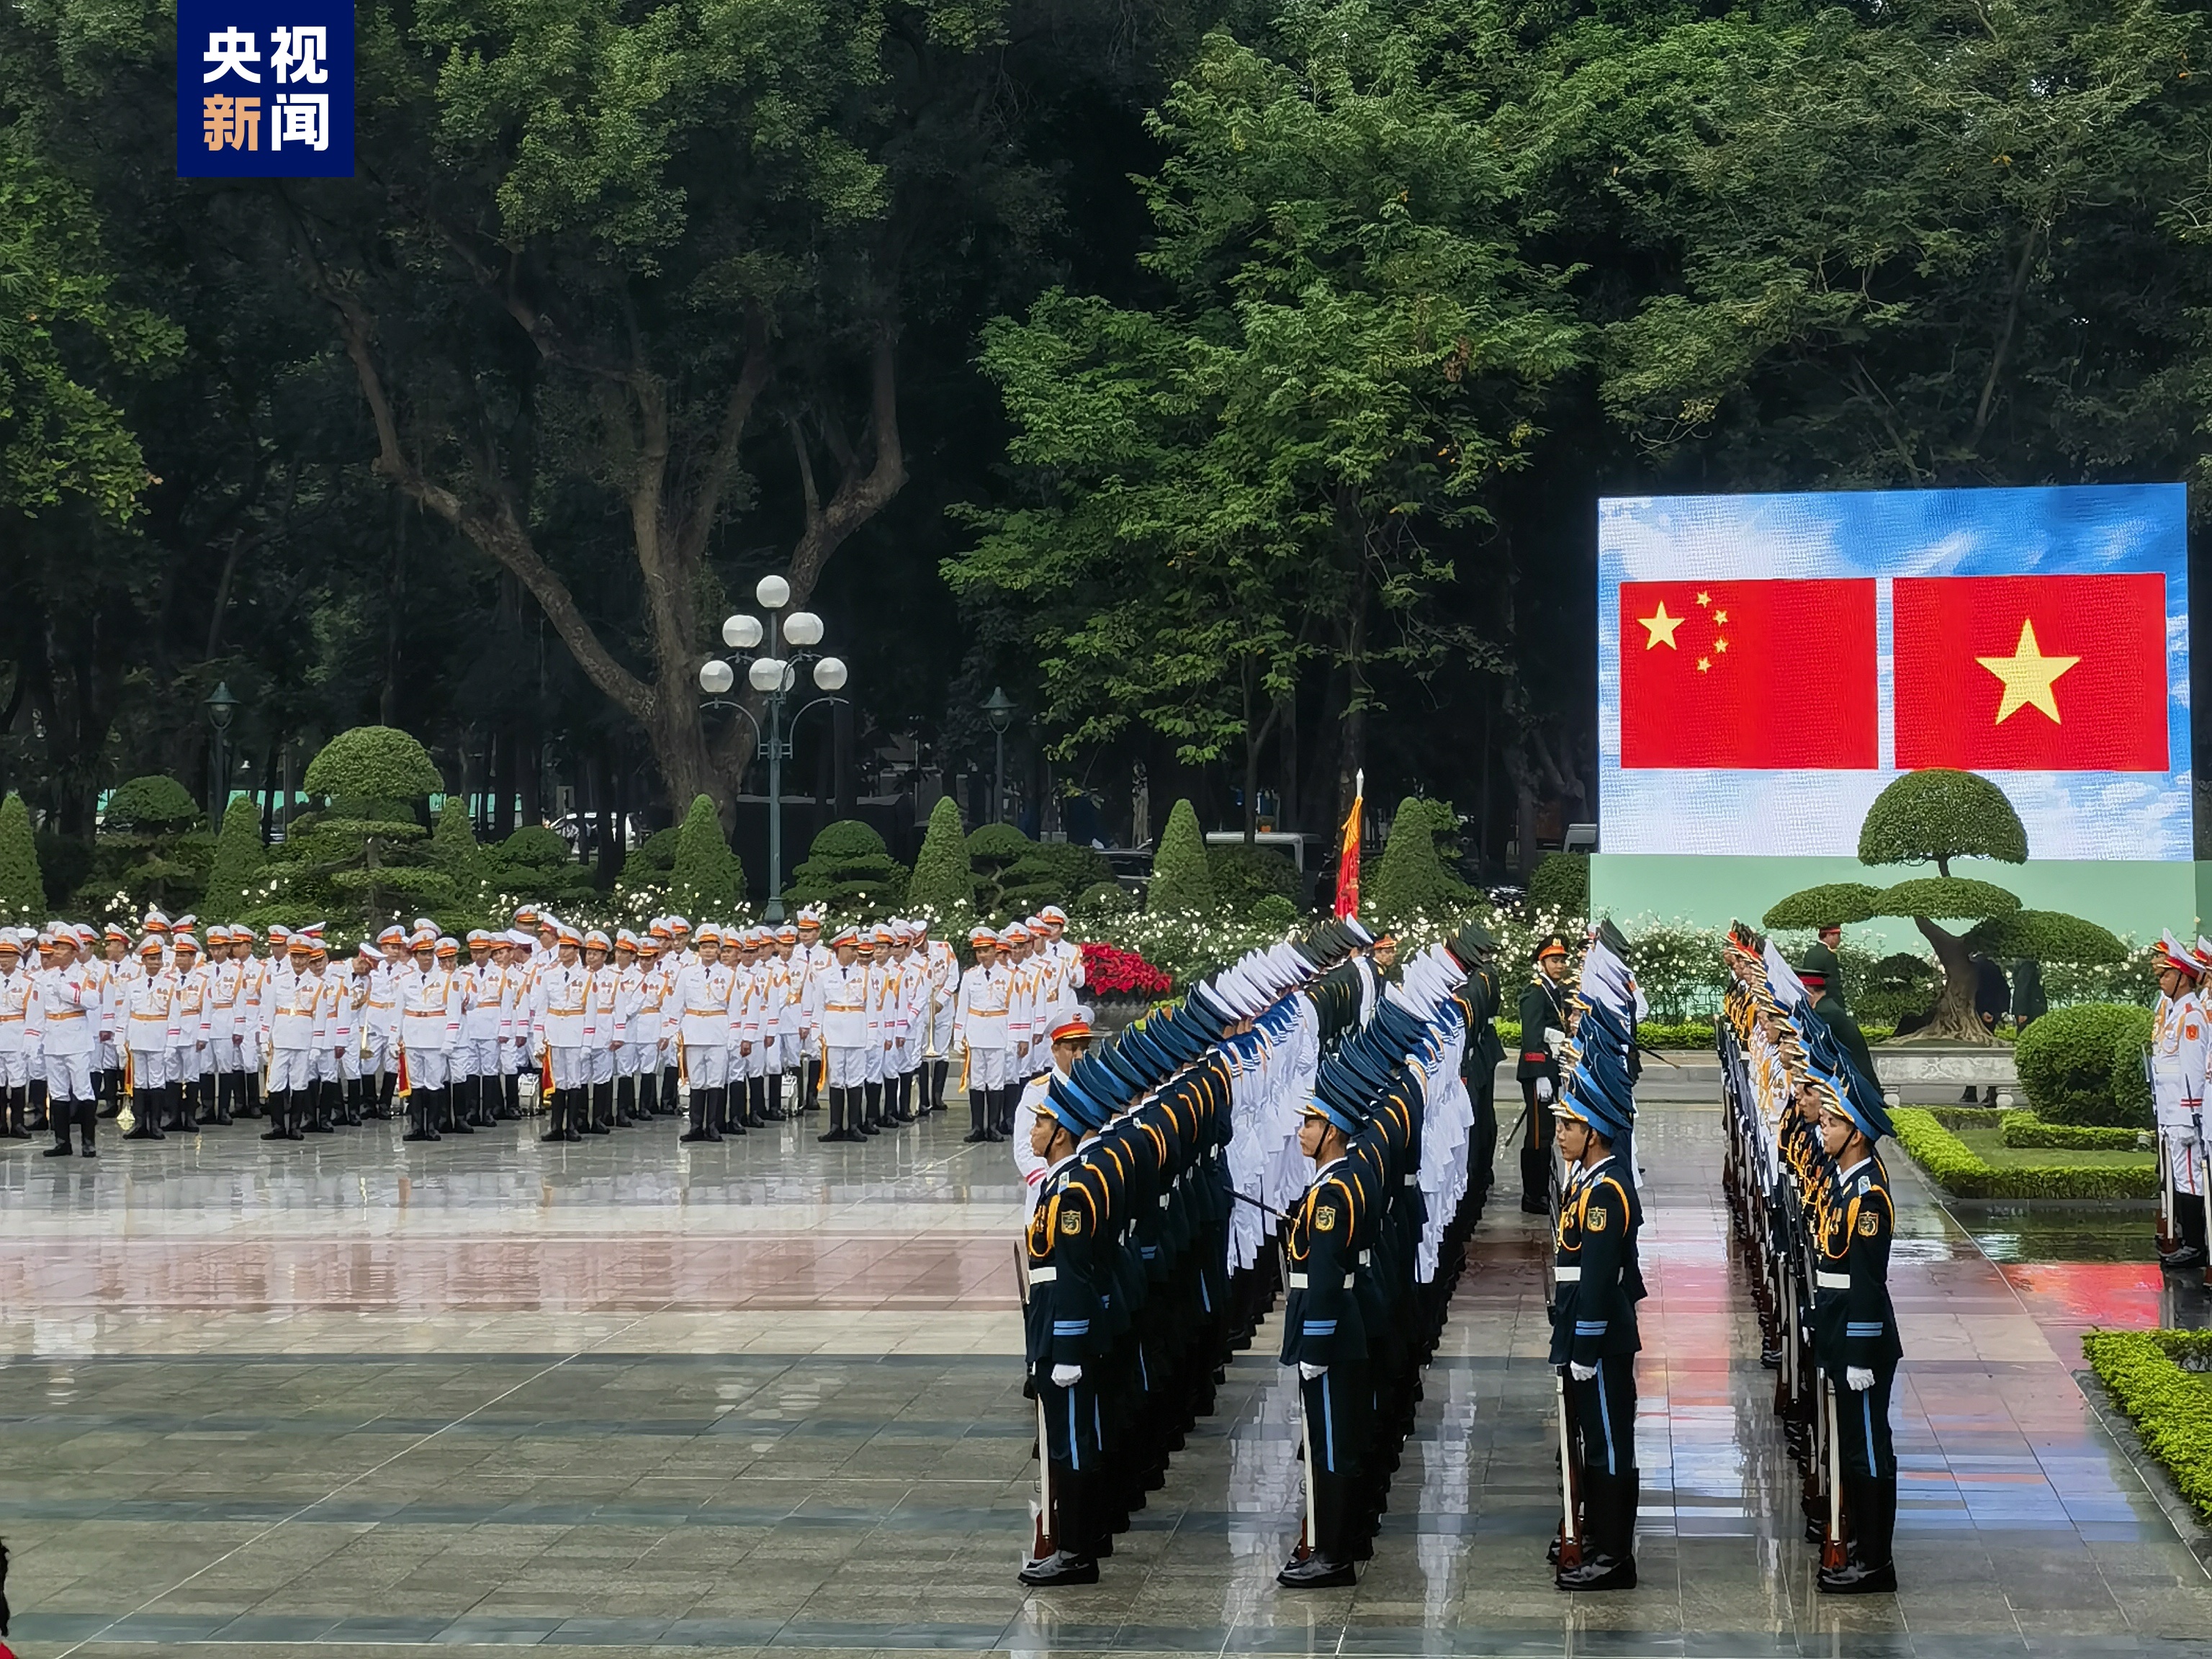 時政快訊丨習近平出席越共中央總書記舉行的歡迎儀式